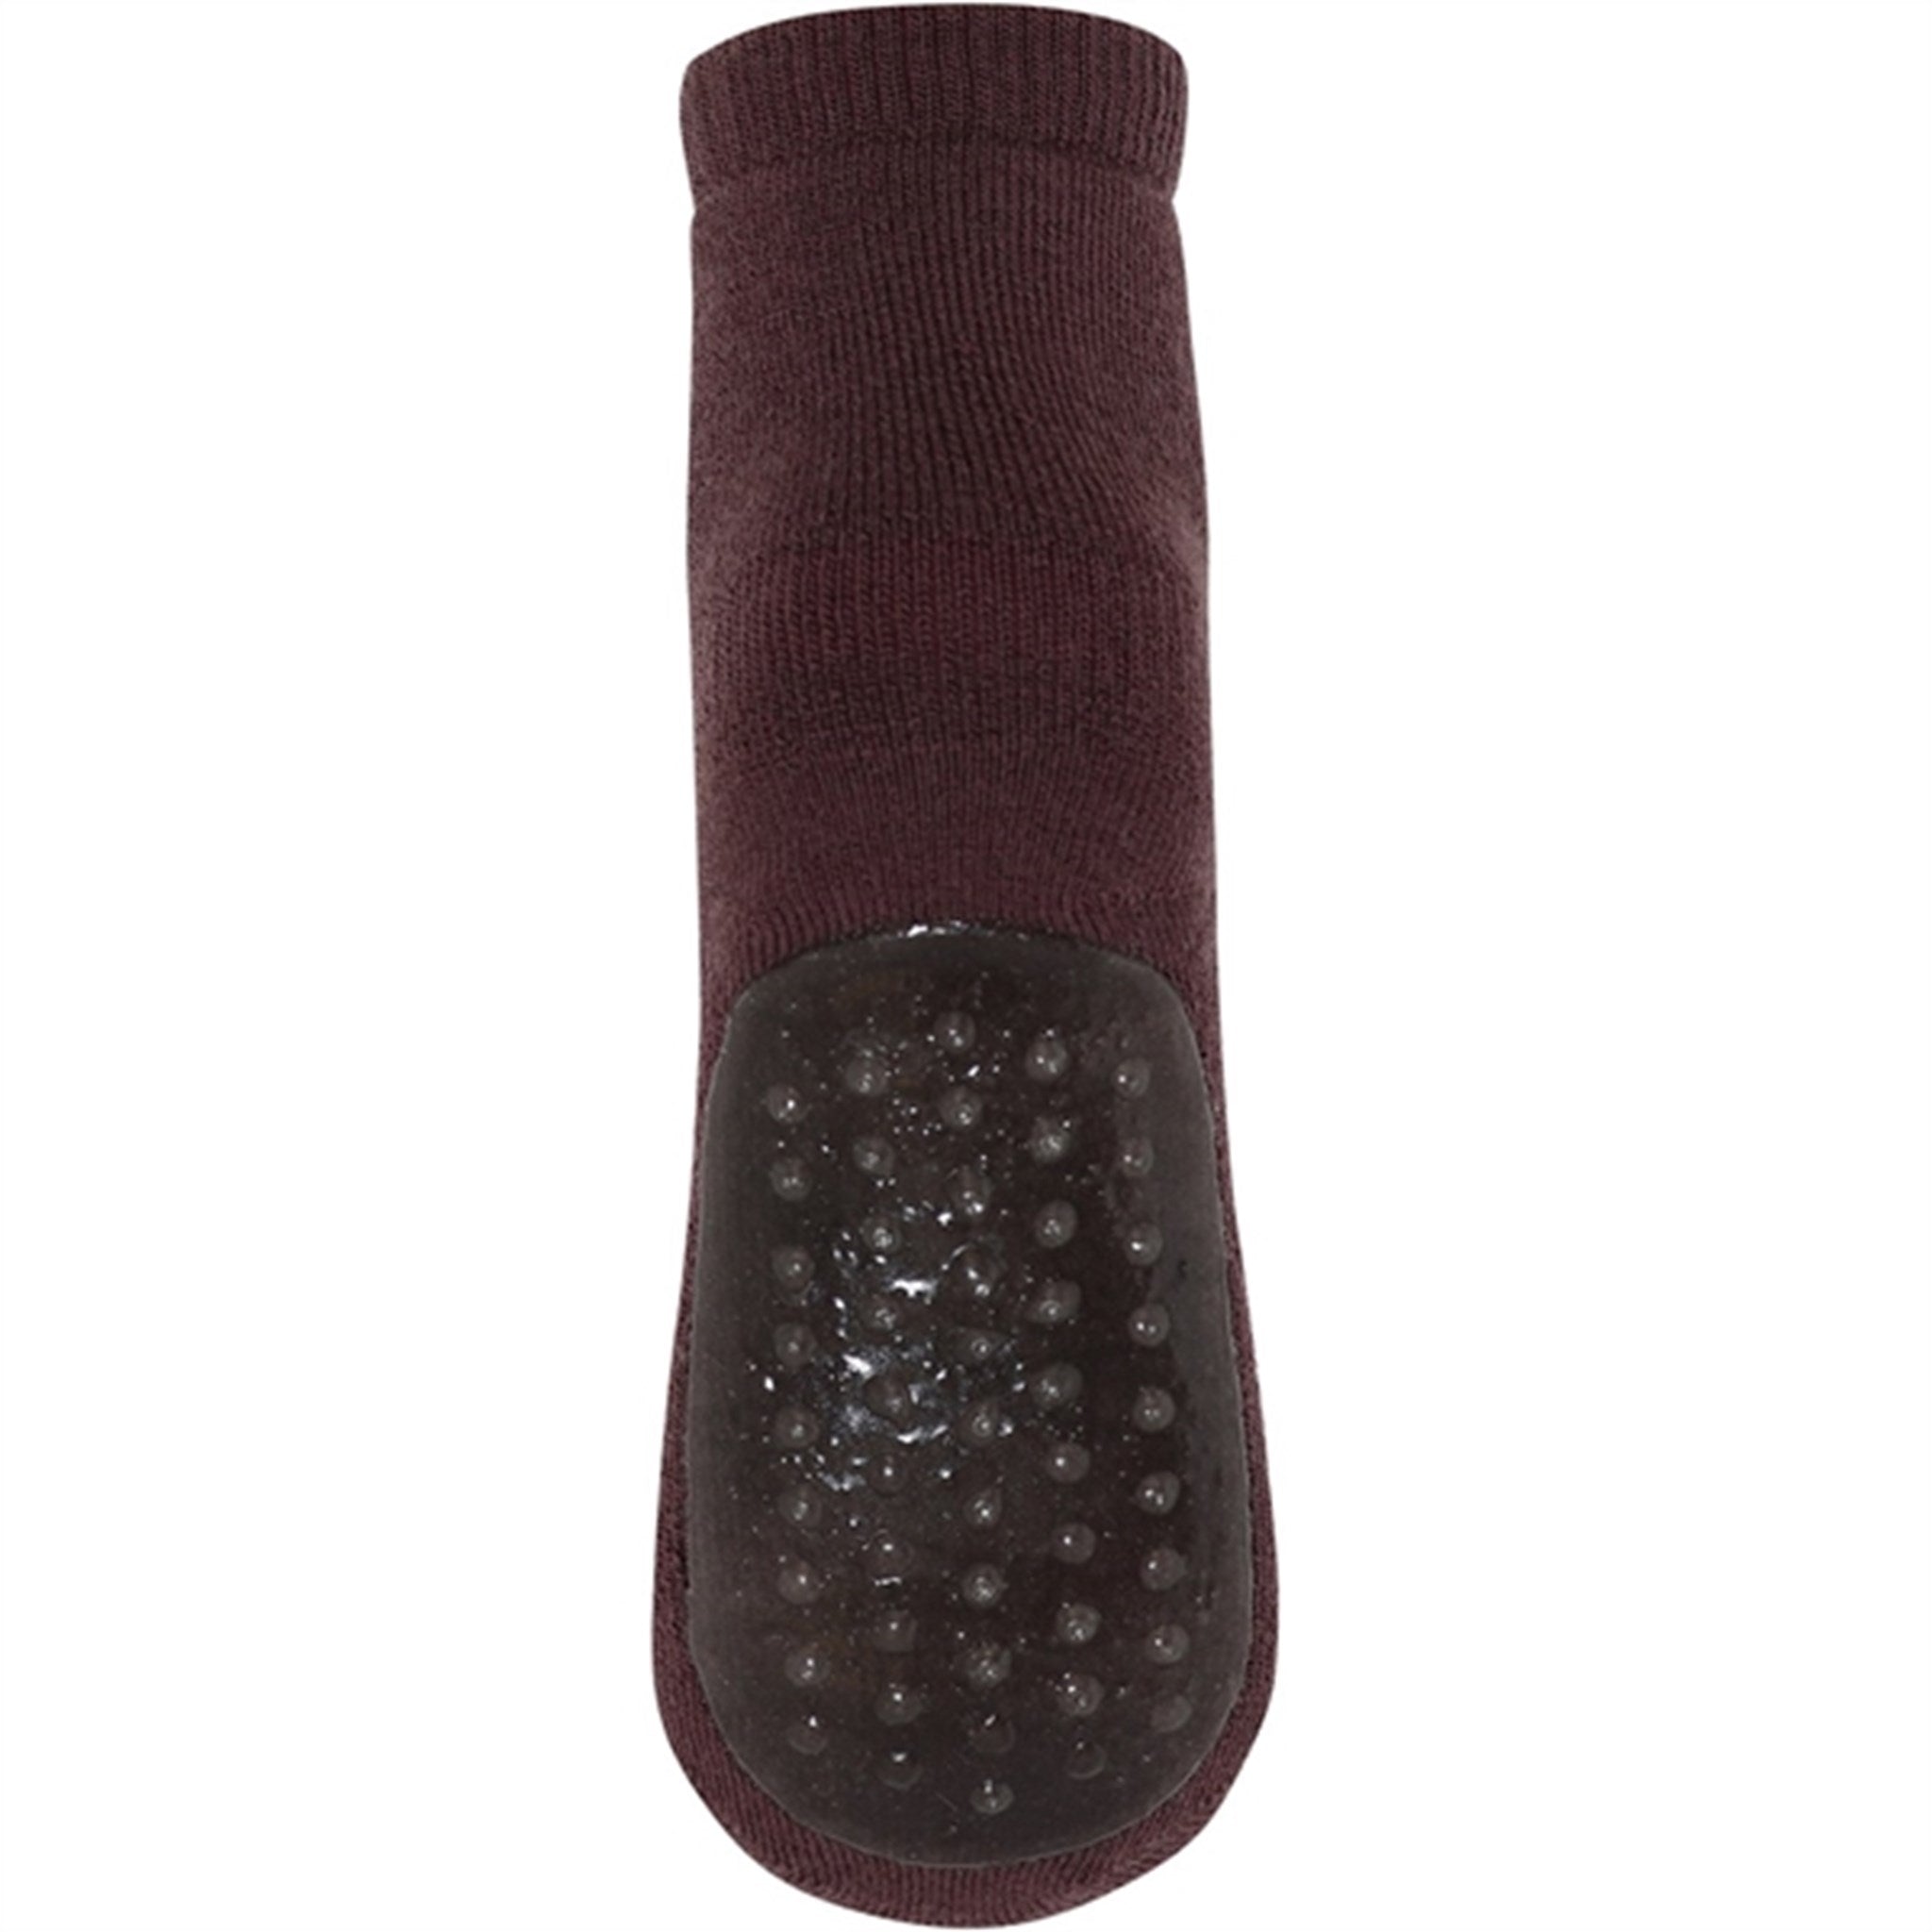 MP 7951 Wool Anstislip Socks Grape Skin 3